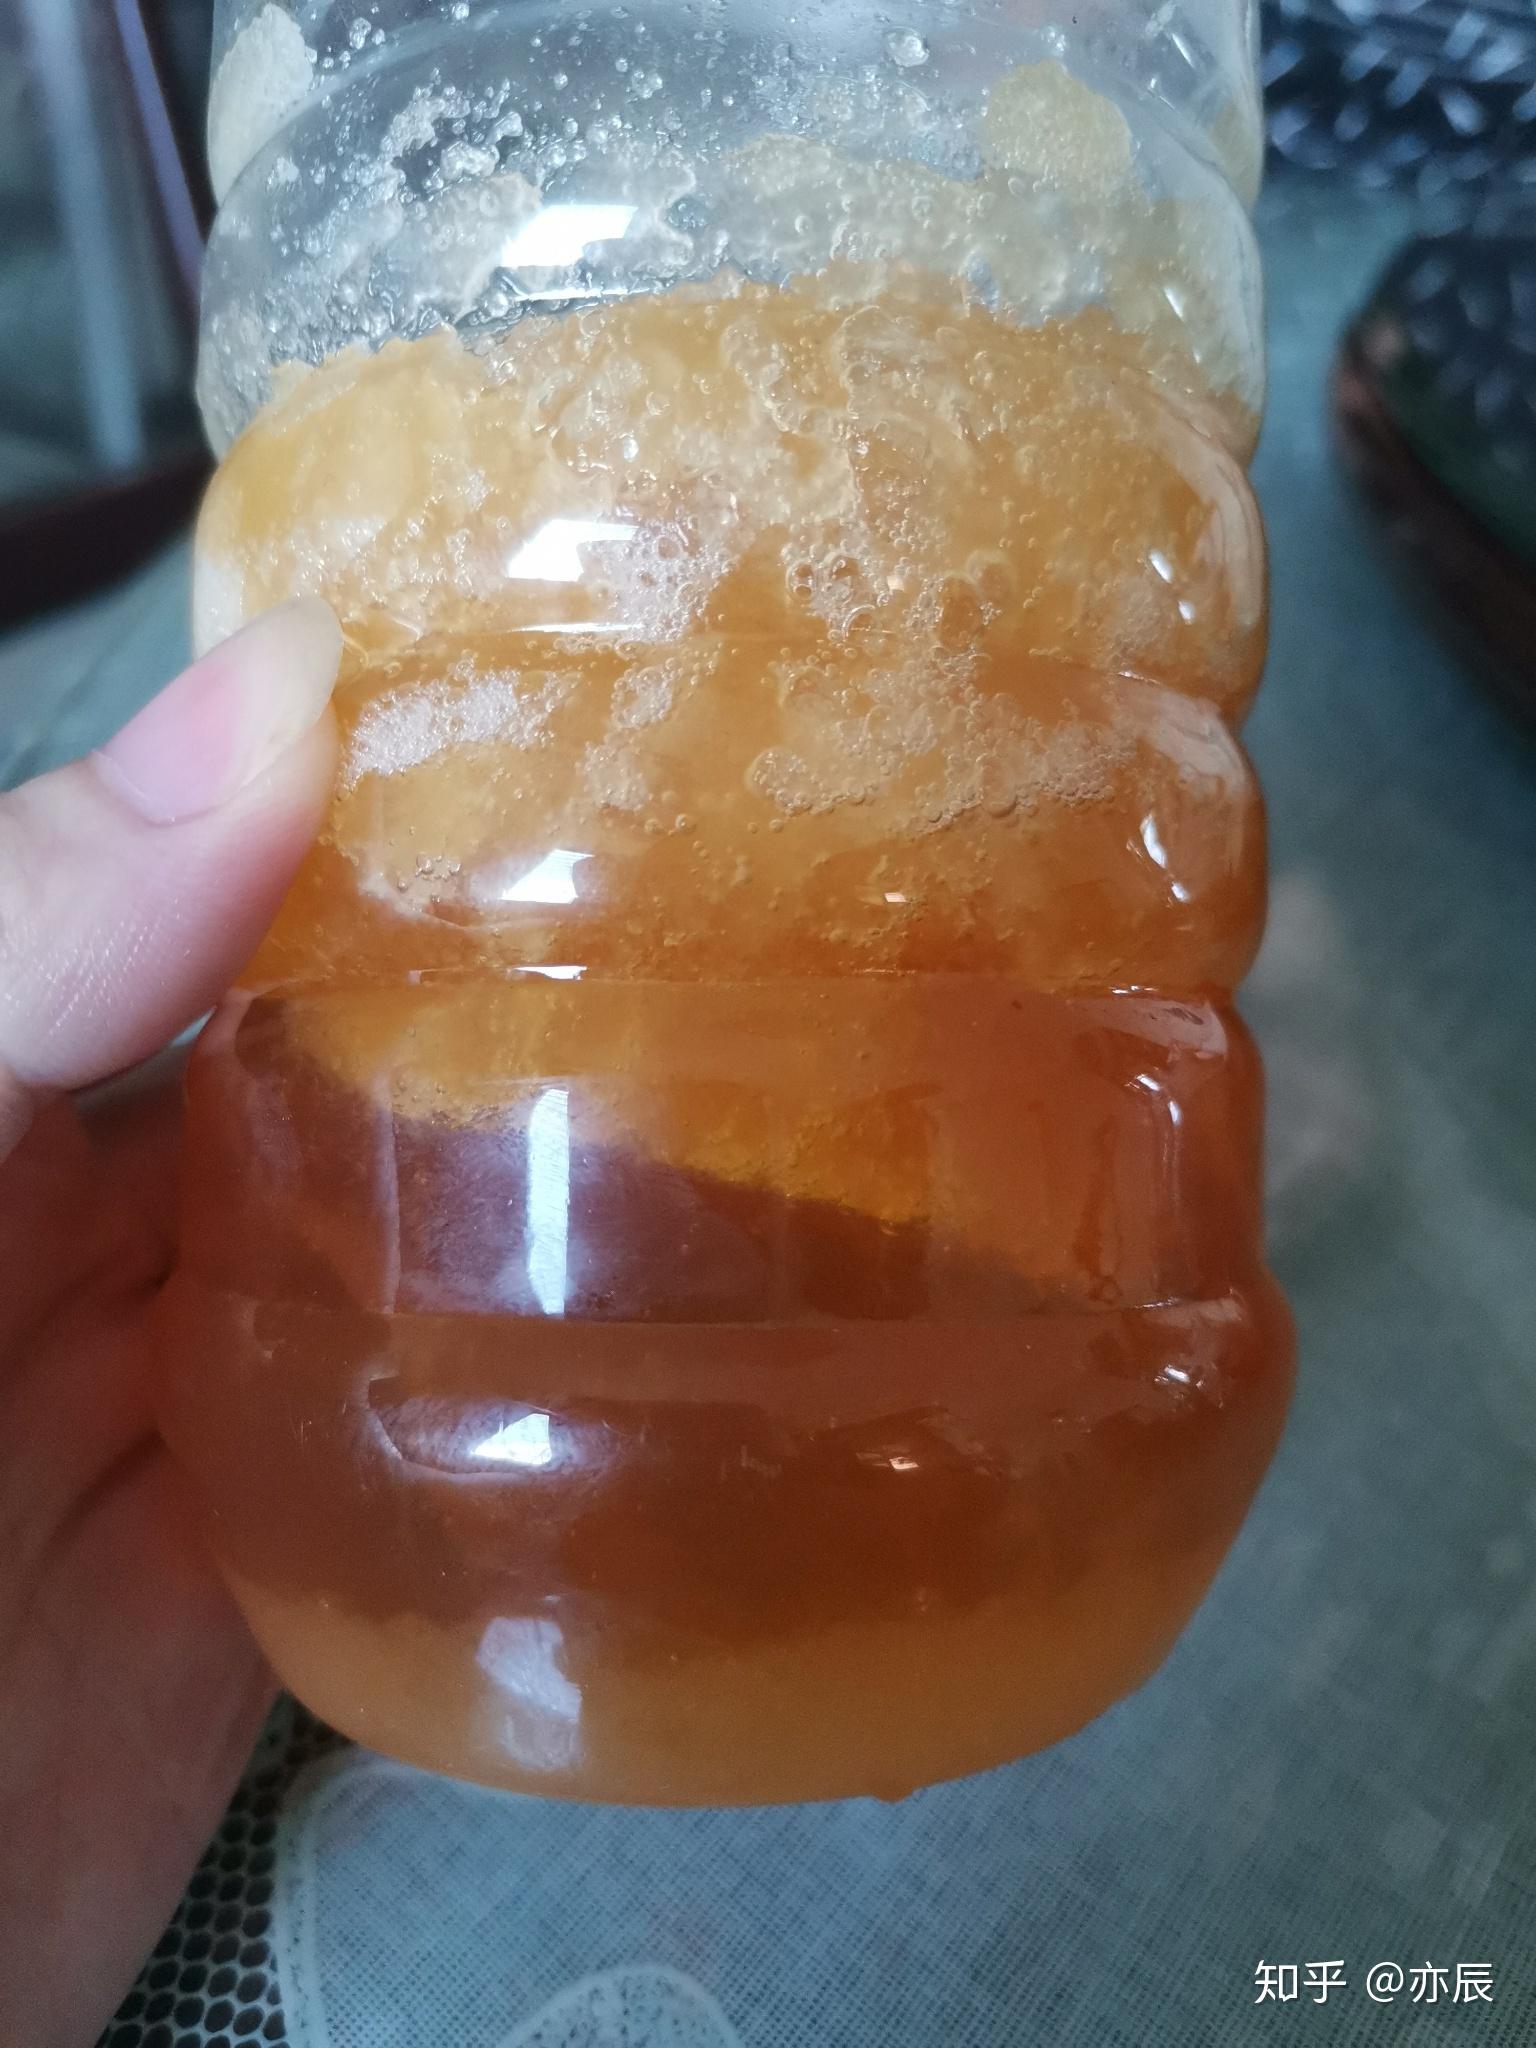 蜂蜜上层结晶像糖一样,蜂蜜有没有变质? 